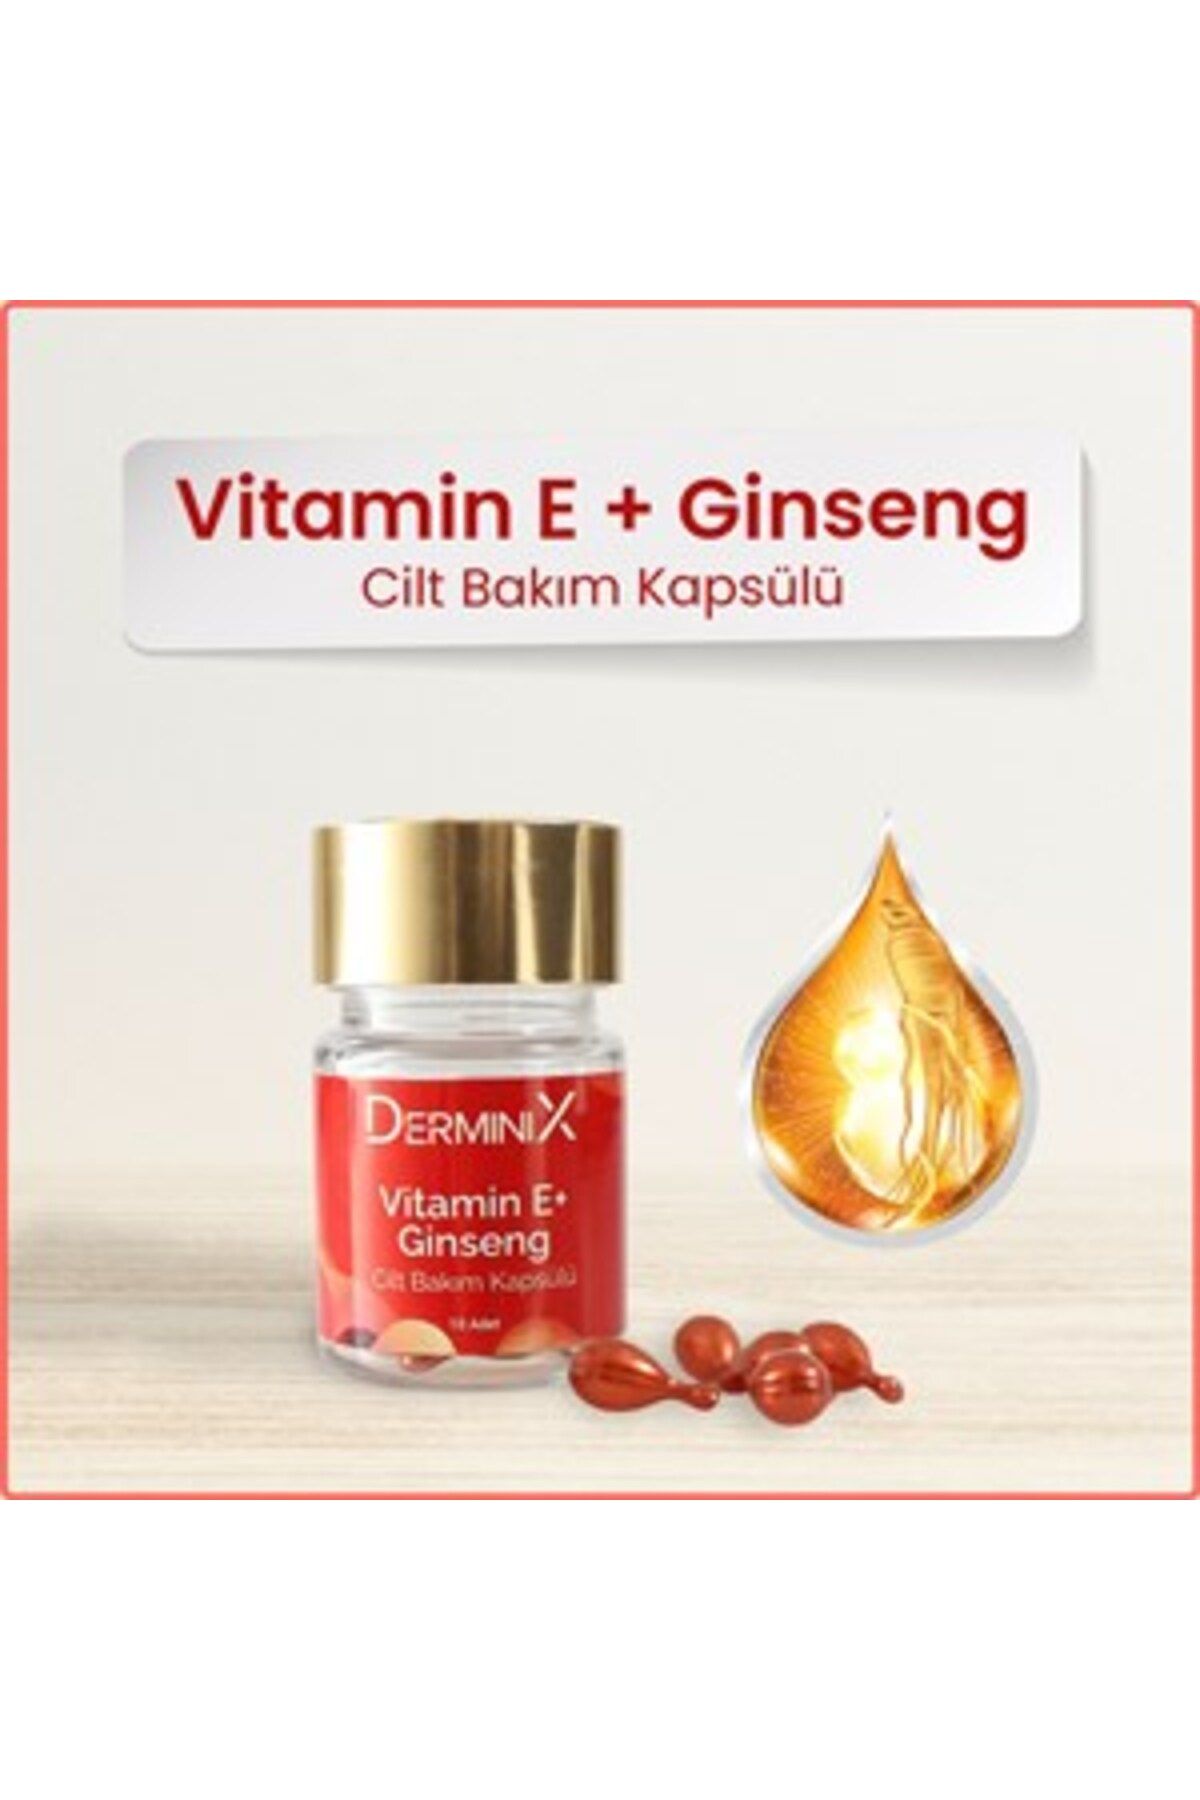 Derminix E Vitamini Ginseng Cilt Bakım Kapsülü